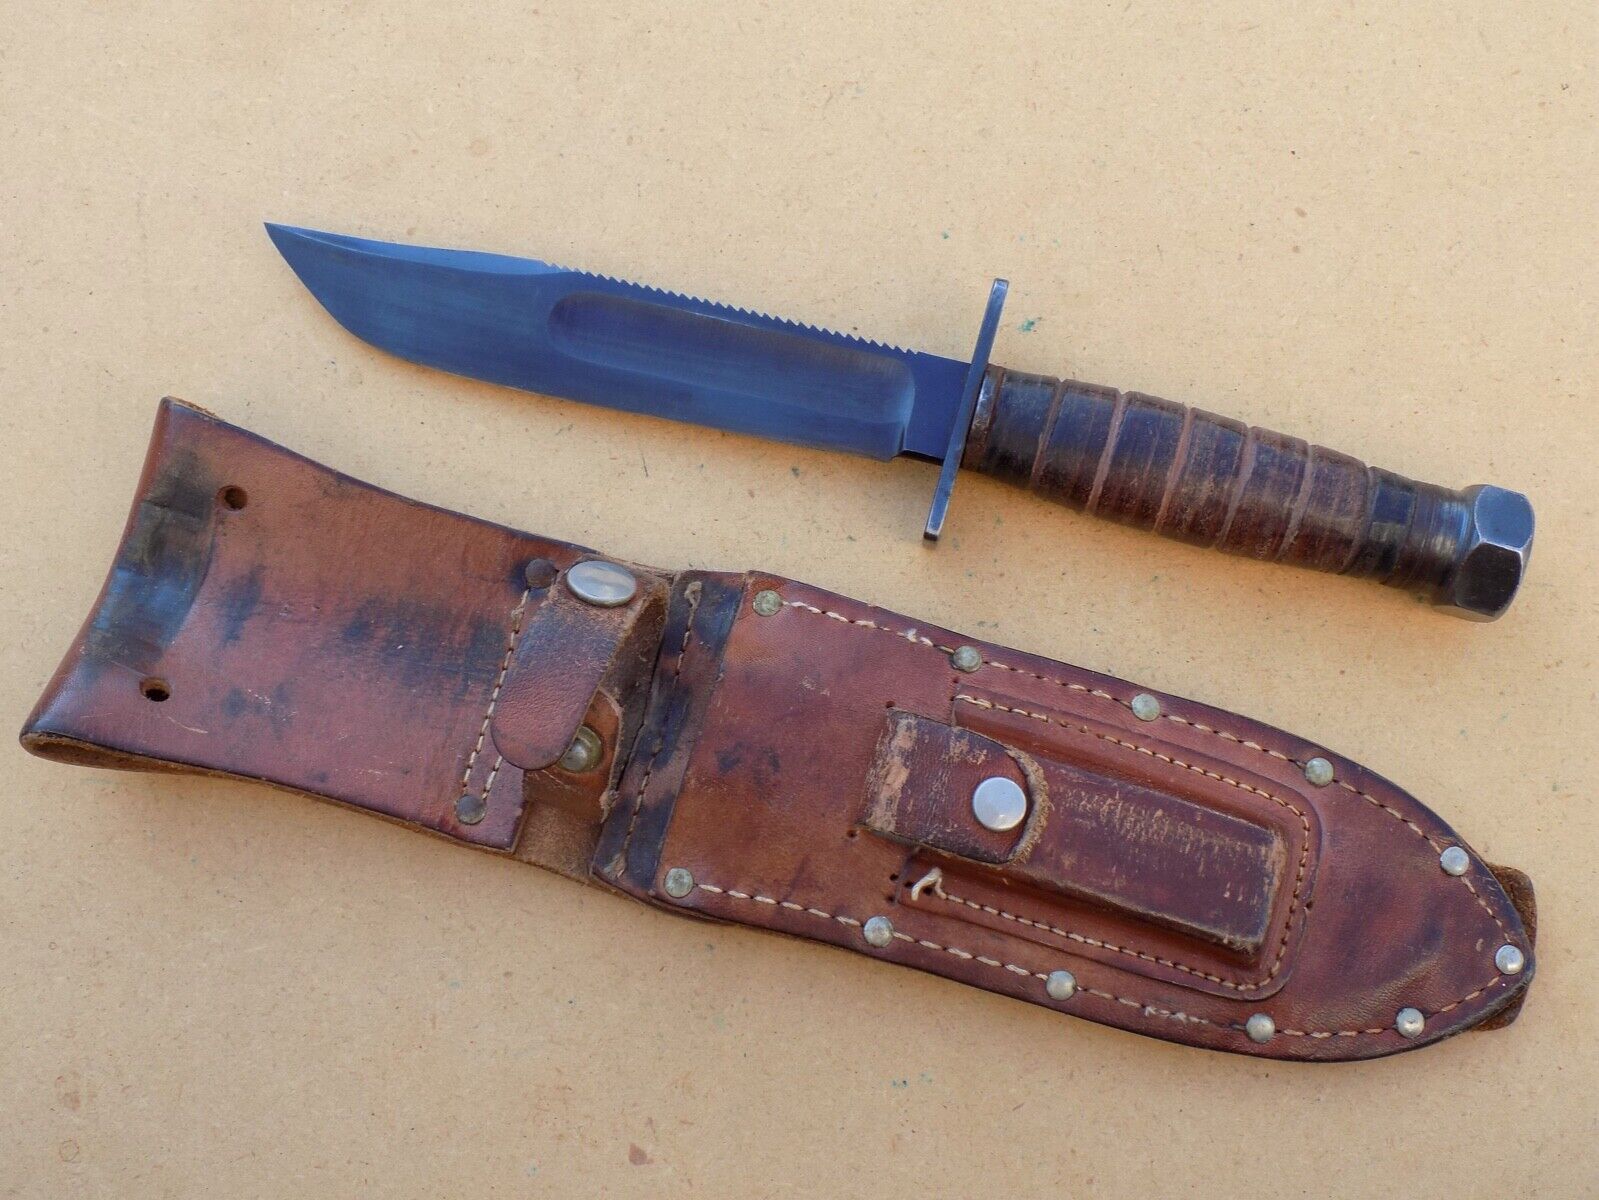 Rare Vintage Unmarked Marbles Pilot Survival Knife for Sale - Soviet ...